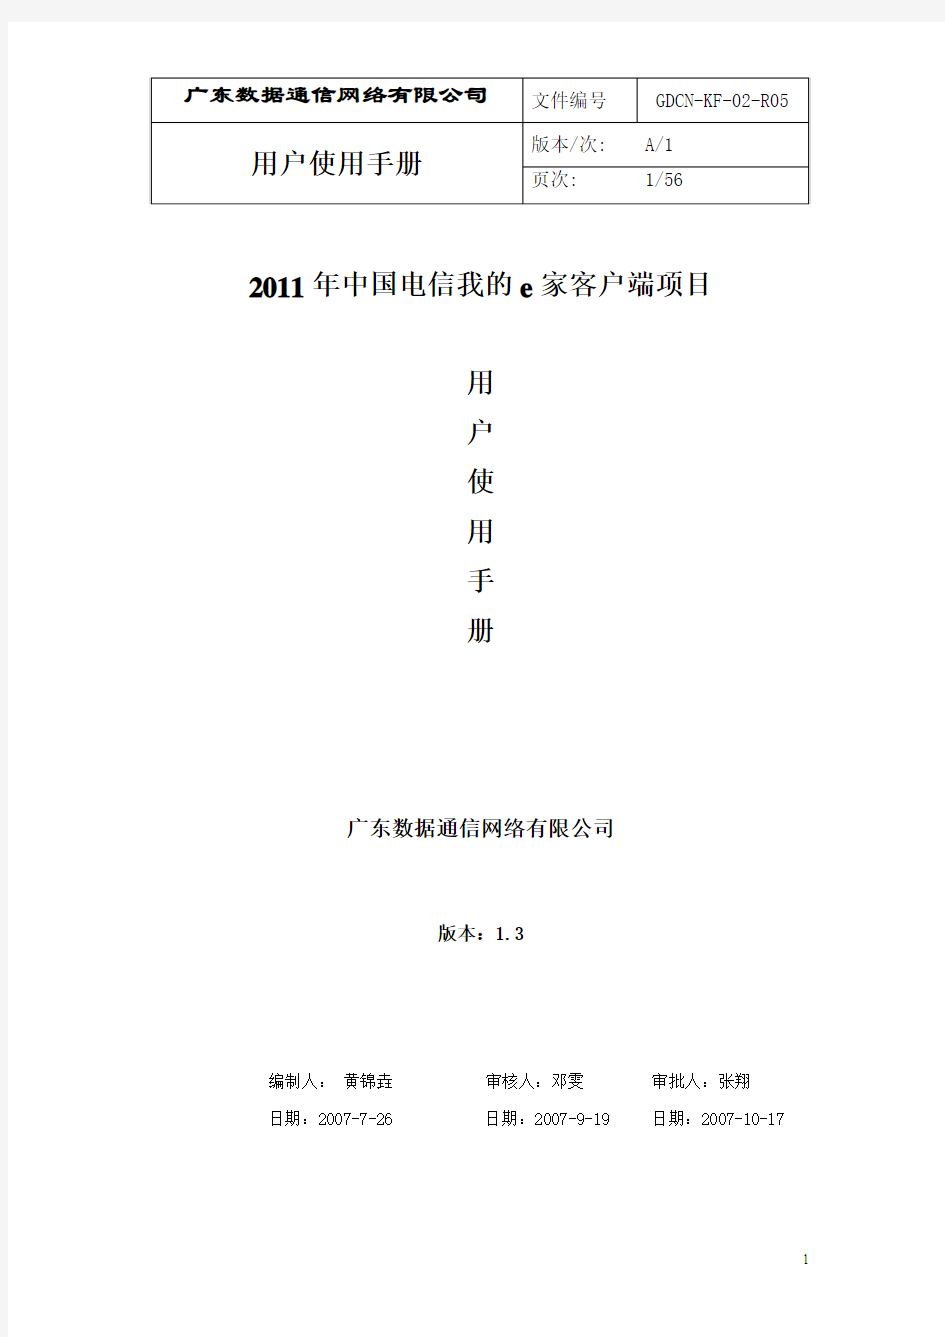 2011年中国电信我的e家客户端用户手册